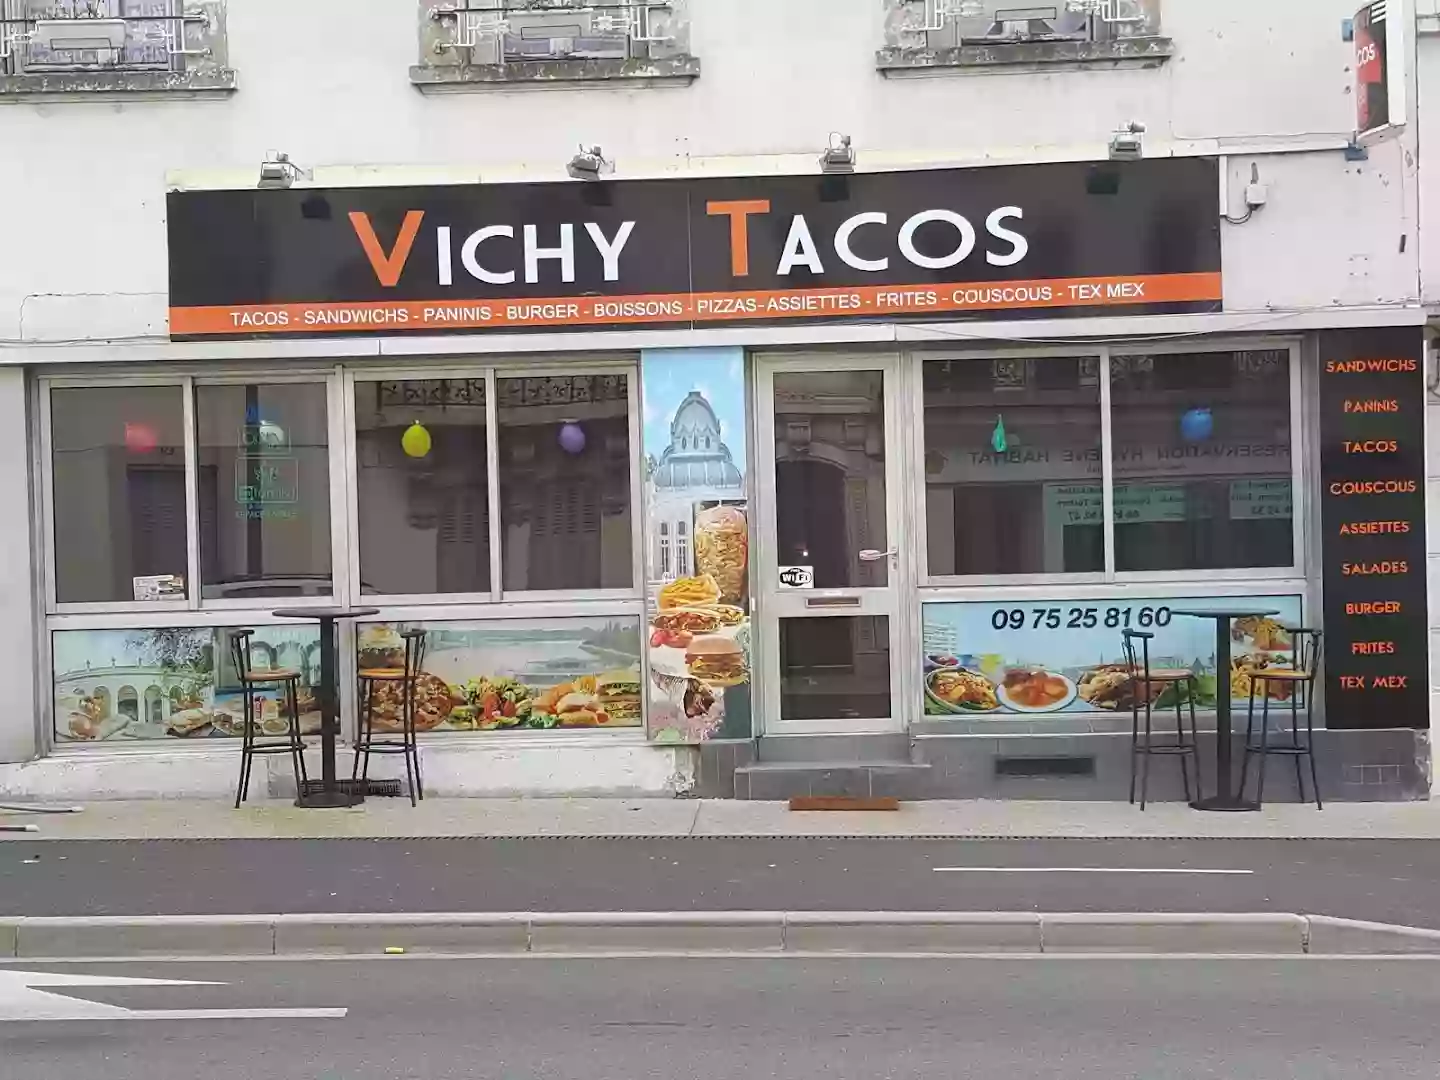 Vichy tacos